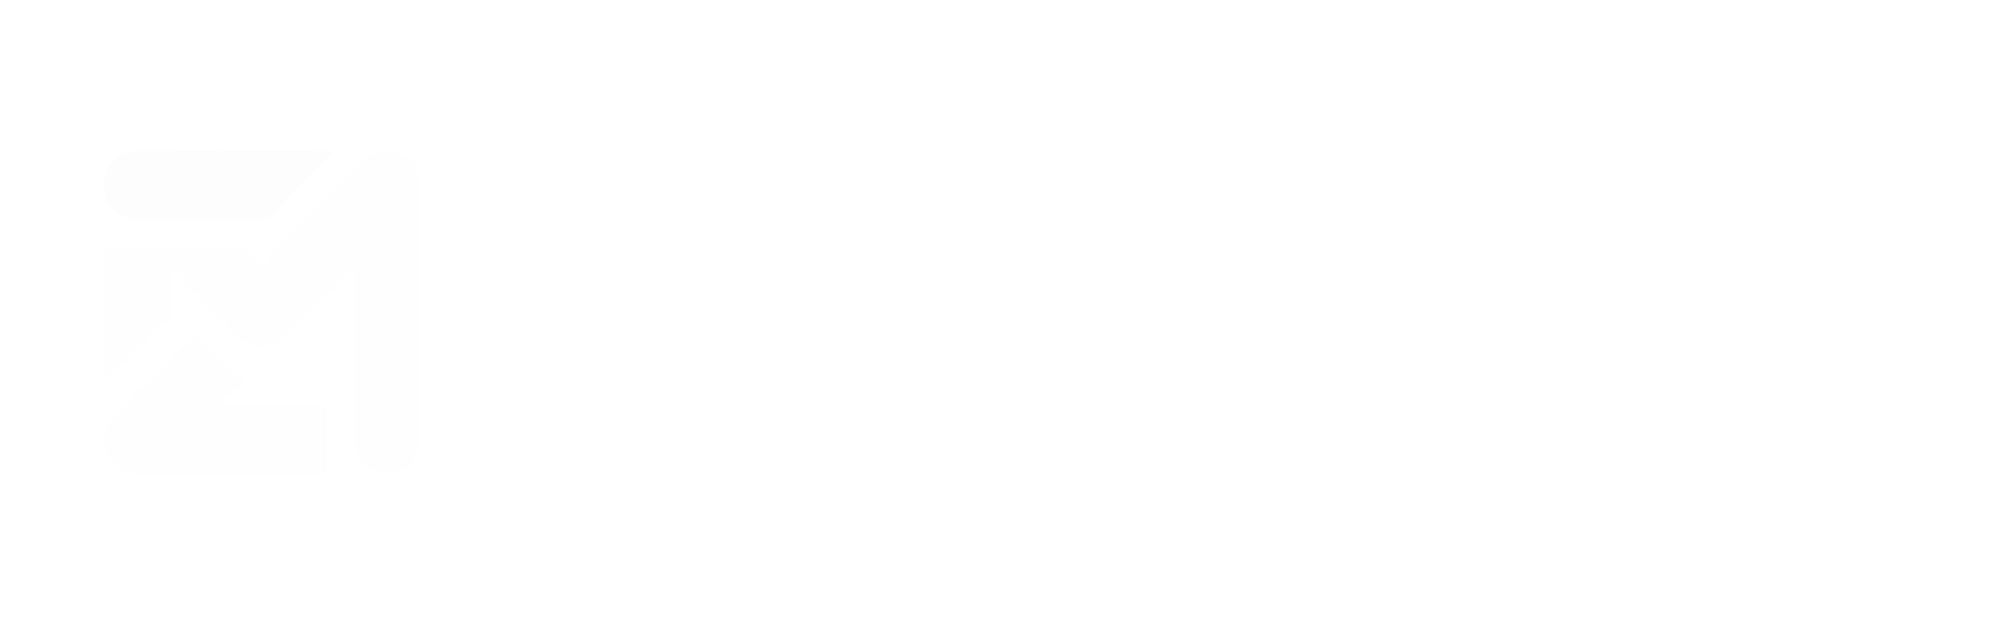 MetaZero logo